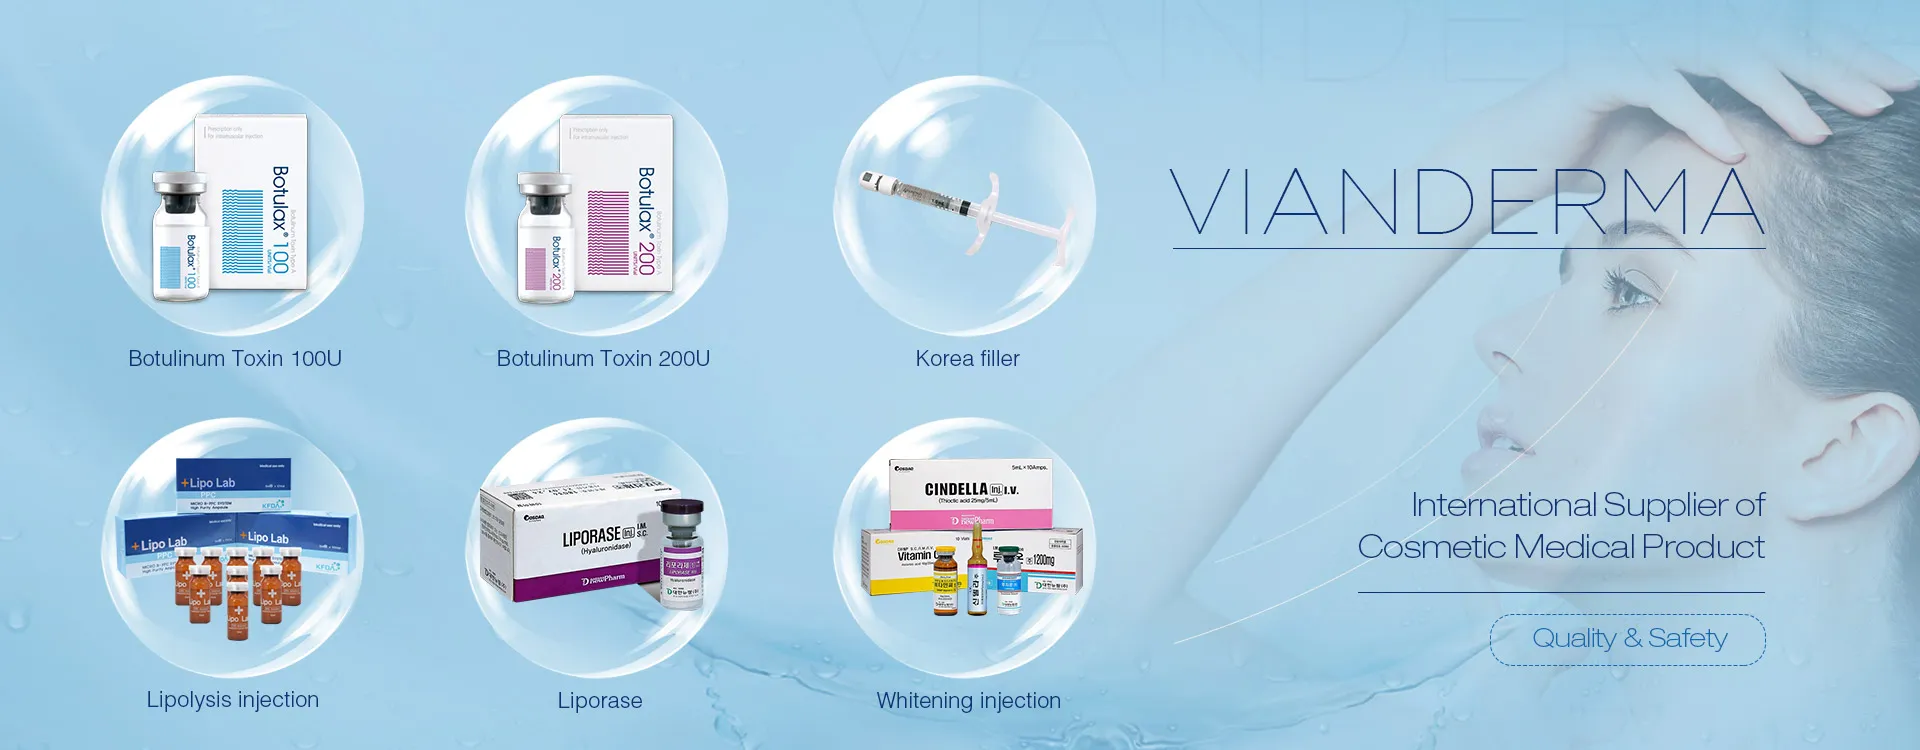 VIANDERMA - międzynarodowy dostawca kosmetycznych wyrobów medycznych